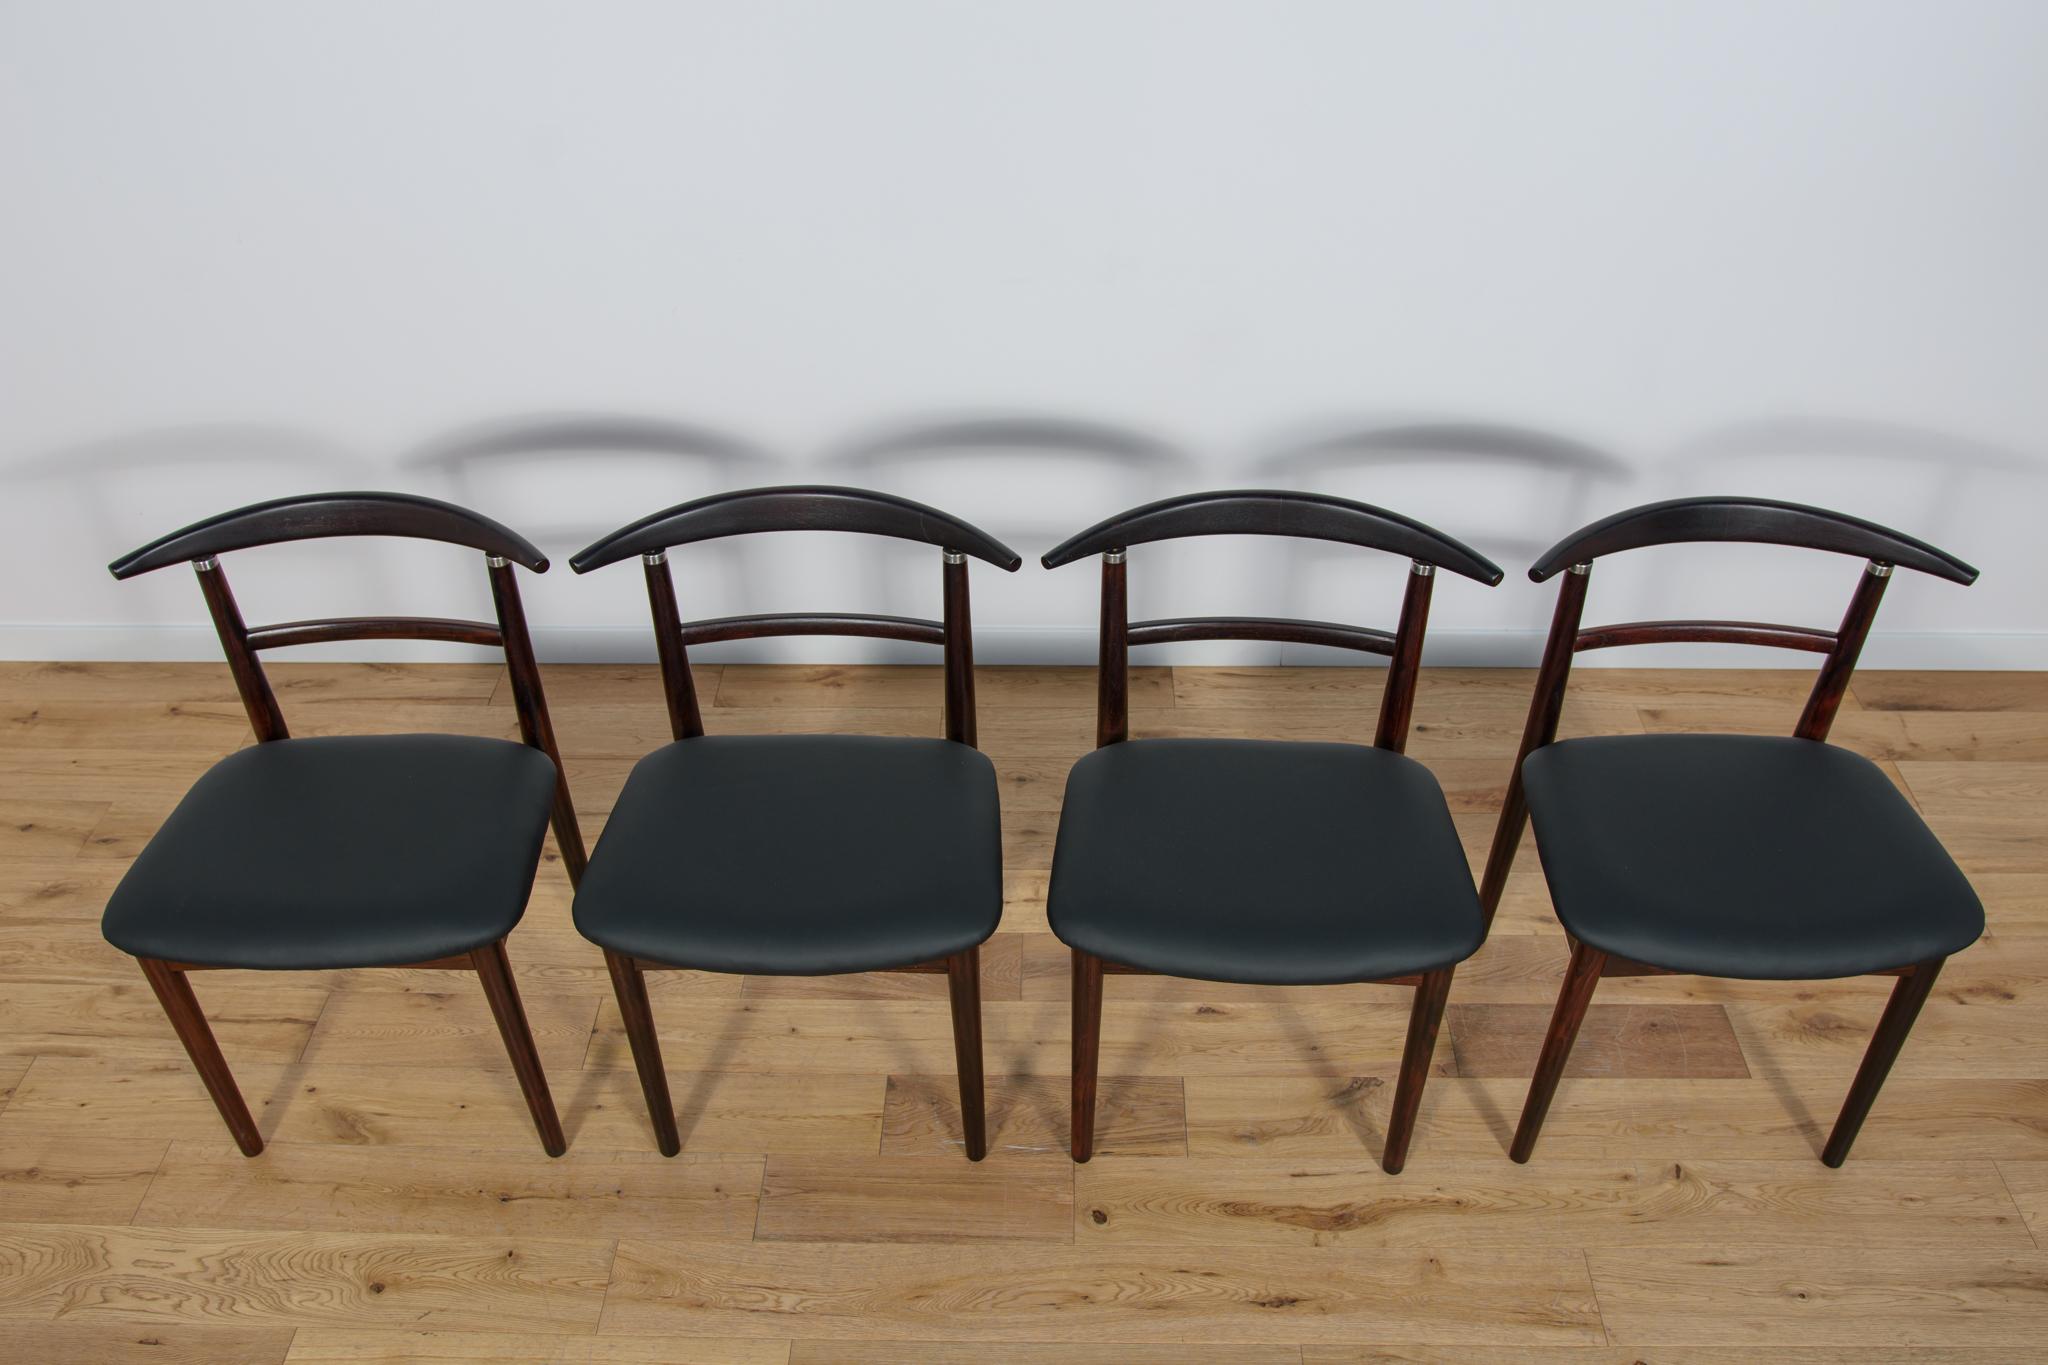 Ein Satz von vier einzigartigen Stühlen, entworfen von Helge Sibast und Borge Rammerskov für die dänische Sibast-Fabrik in den 1960er Jahren. Die Stühle haben einzigartig geschnitzte ergonomische Rückenlehnen. Die Stühle wurden einer umfassenden